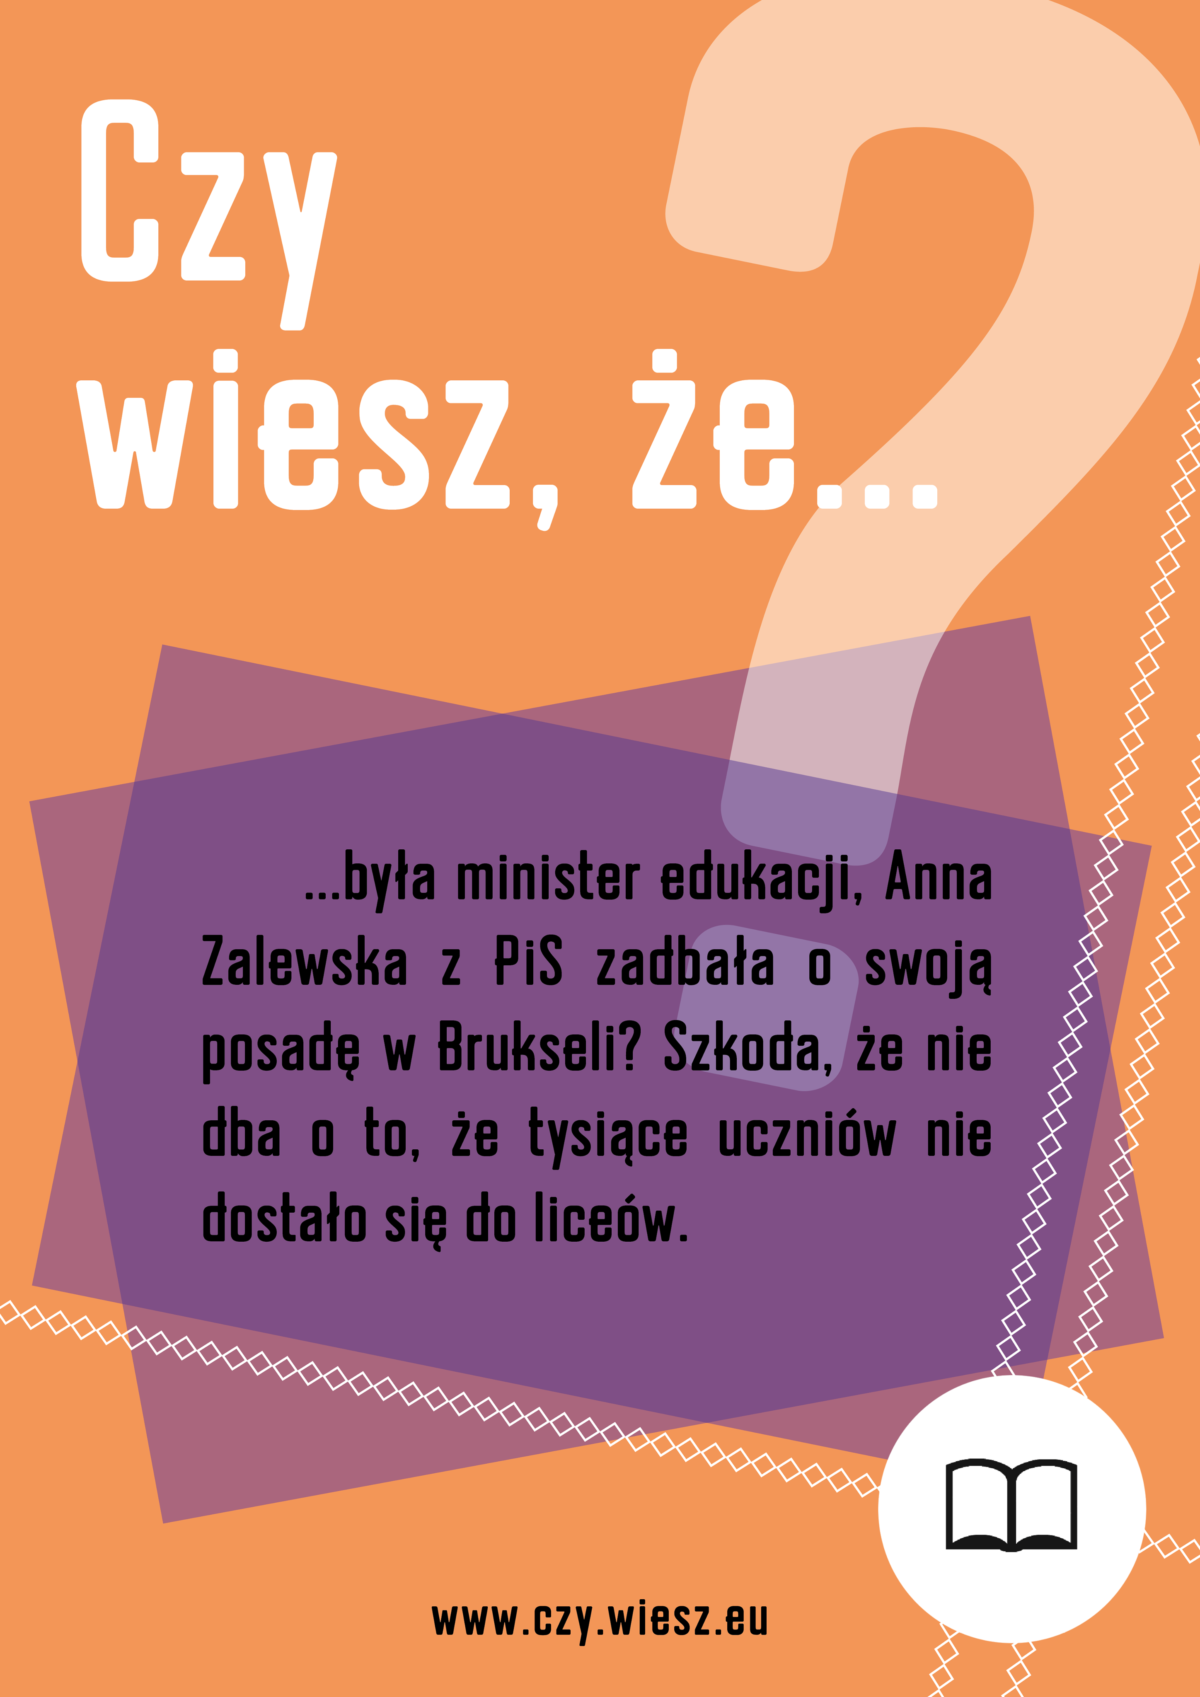 Czy wiesz, że była minister edukacji Anna Zalewska z PiS zadbała o swoją posadę w Brukseli?